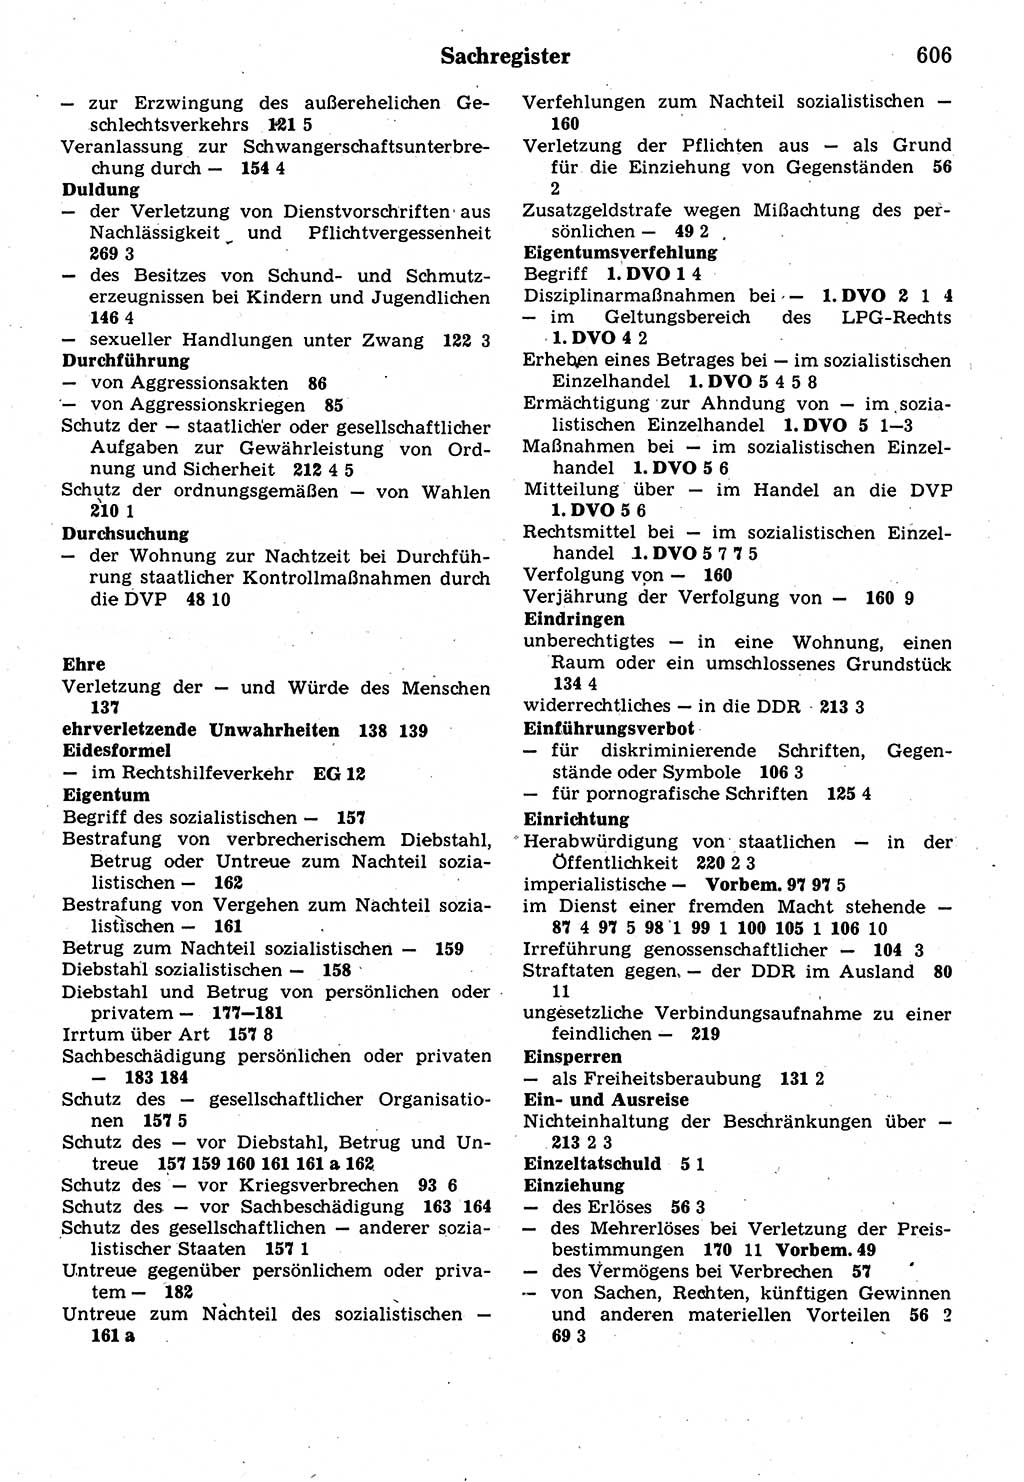 Strafrecht der Deutschen Demokratischen Republik (DDR), Kommentar zum Strafgesetzbuch (StGB) 1987, Seite 606 (Strafr. DDR Komm. StGB 1987, S. 606)